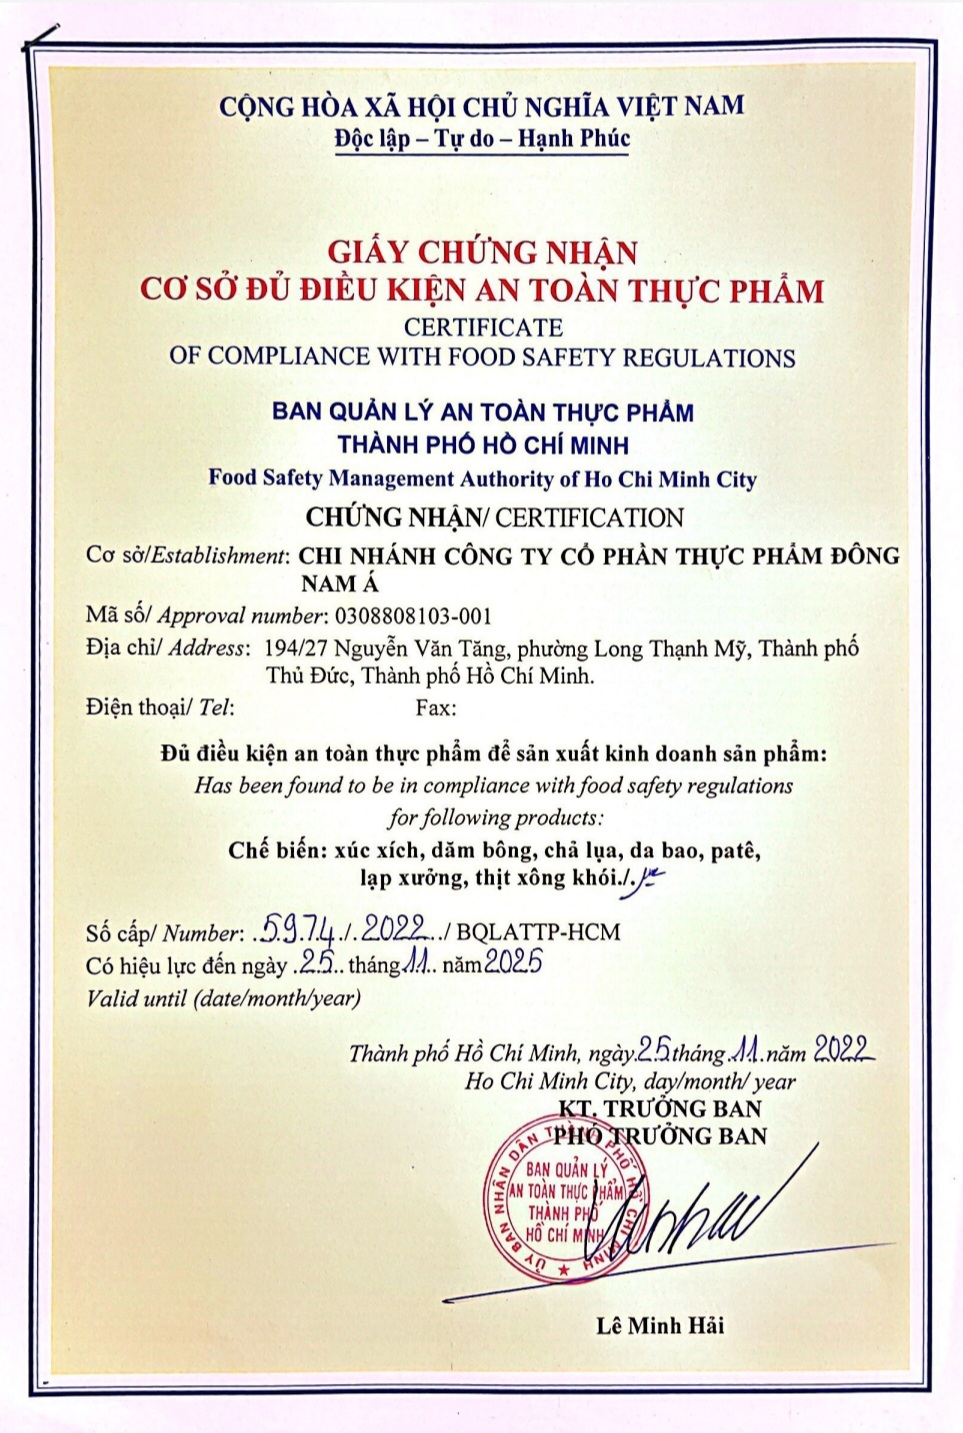 Minh Nguyễn Food - Cá Viên - Xiên Que - Ăn Vặt Giá Sỉ